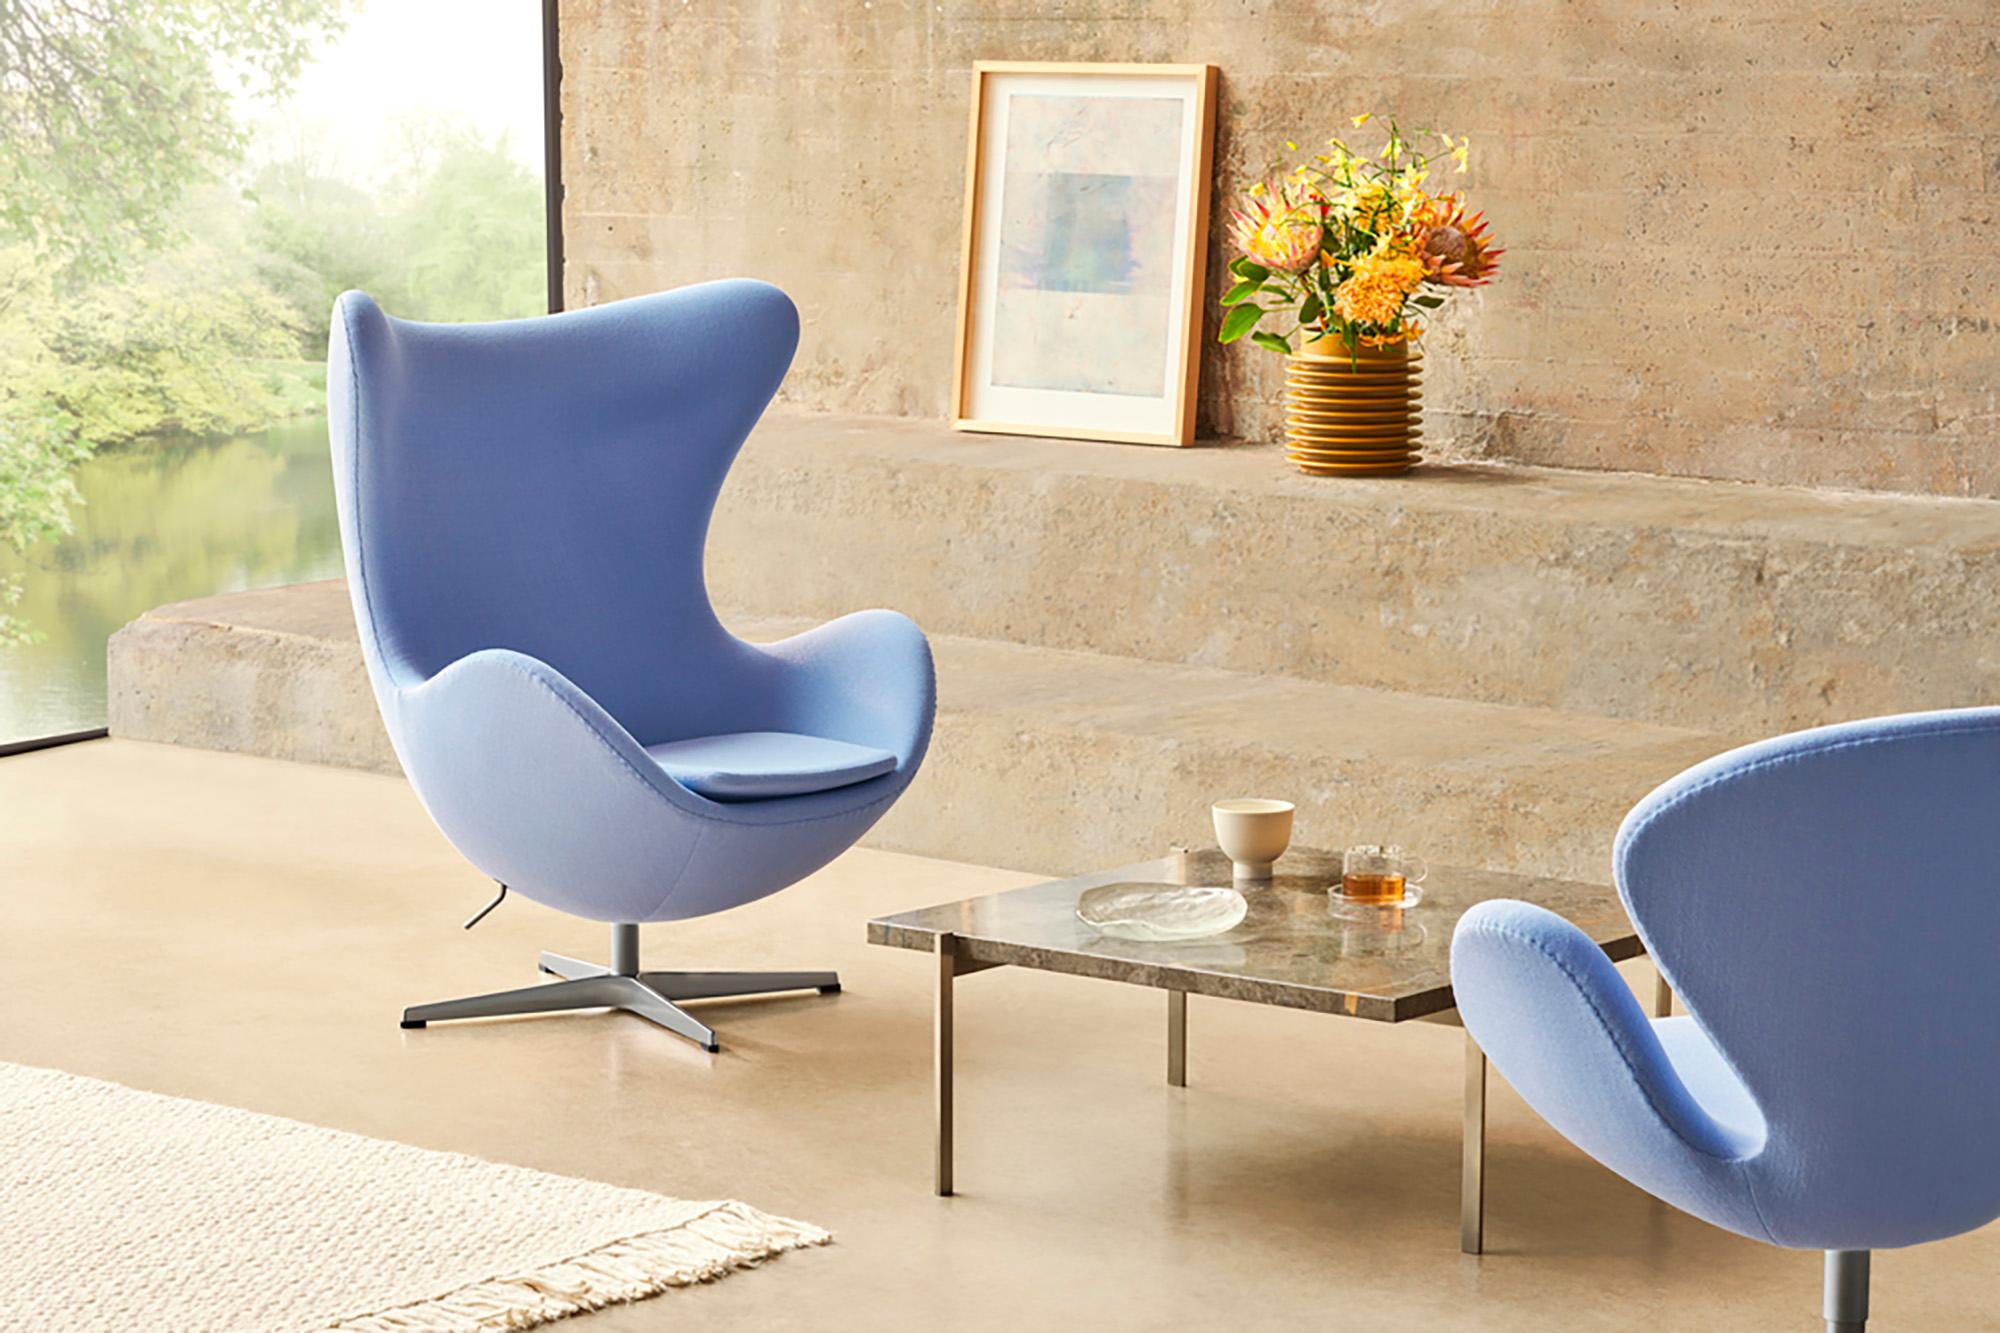 Arne Jacobsen 'Swan' Chair for Fritz Hansen in Fabric Upholstery (Cat. 3) For Sale 3